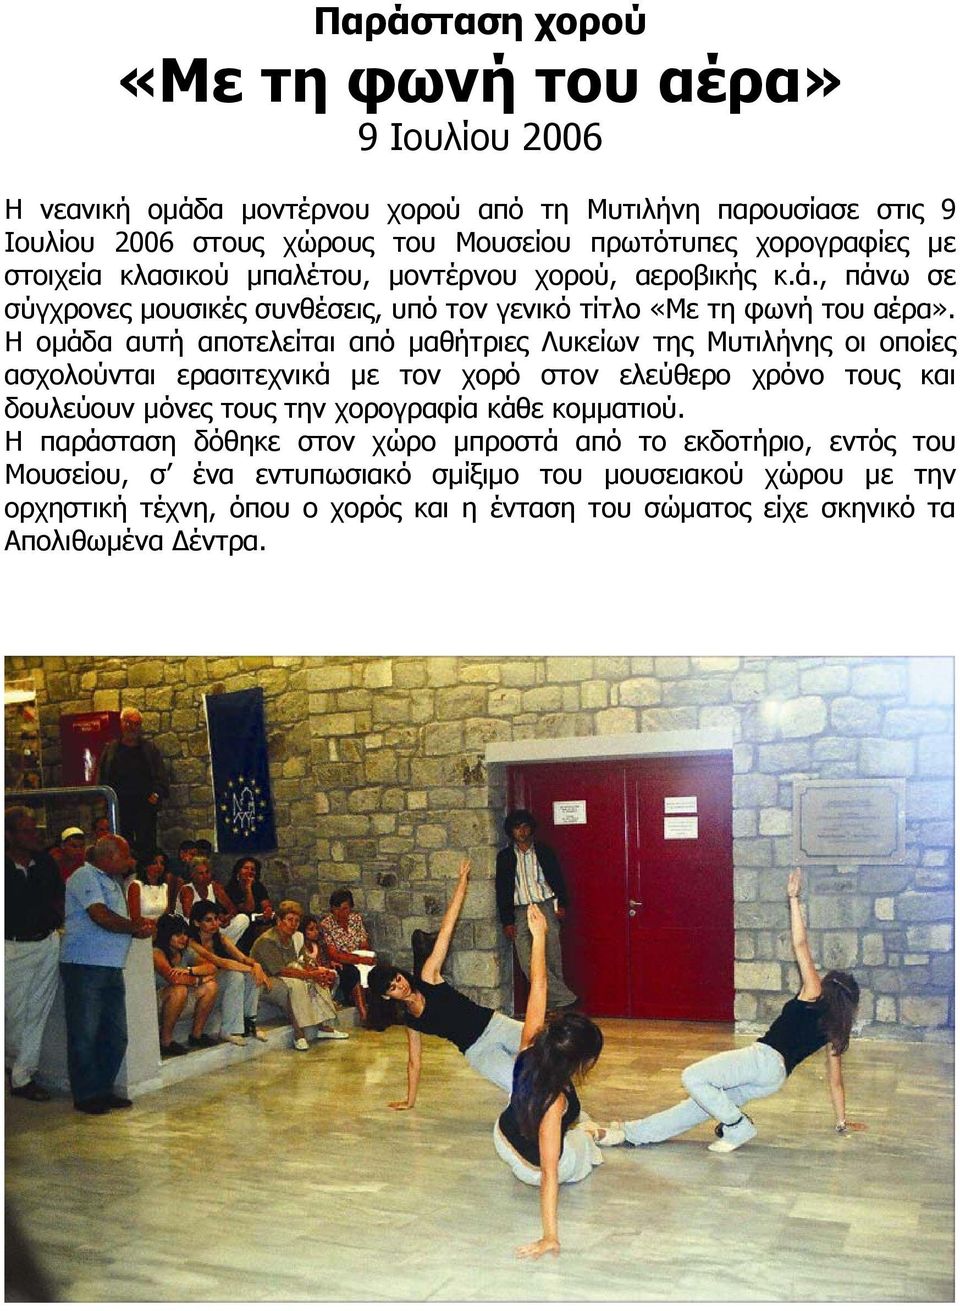 Η οµάδα αυτή αποτελείται από µαθήτριες Λυκείων της Μυτιλήνης οι οποίες ασχολούνται ερασιτεχνικά µε τον χορό στον ελεύθερο χρόνο τους και δουλεύουν µόνες τους την χορογραφία κάθε